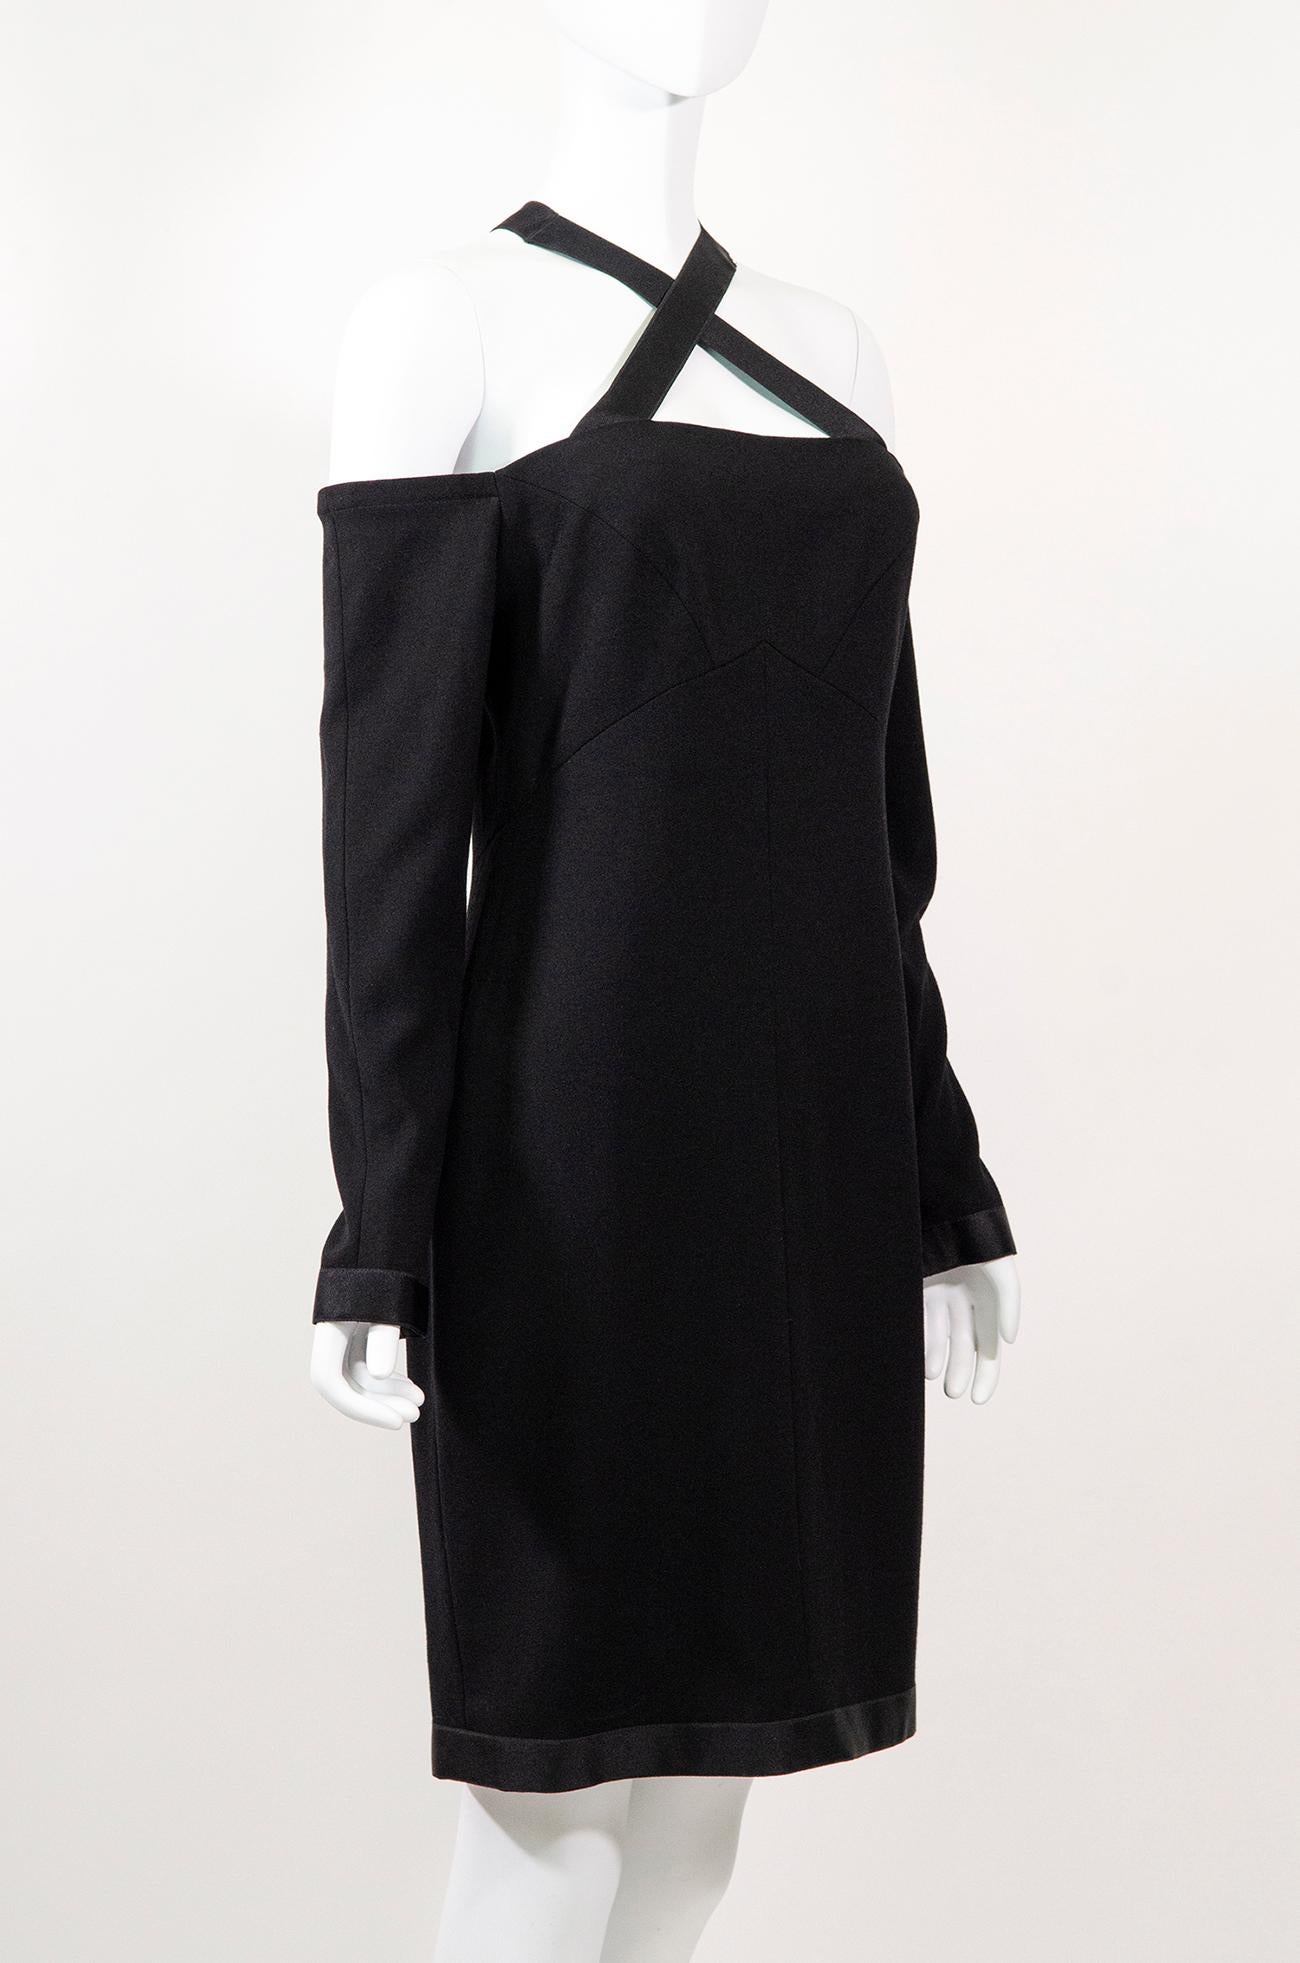 La parfaite petite robe noire vintage de Chanel. Cette beauté classique est une pièce des années 1990 conçue par Karl Lagerfeld.

Cette élégante robe Chanel est un classique incroyable qui ne se démodera jamais. La qualité est exceptionnelle -